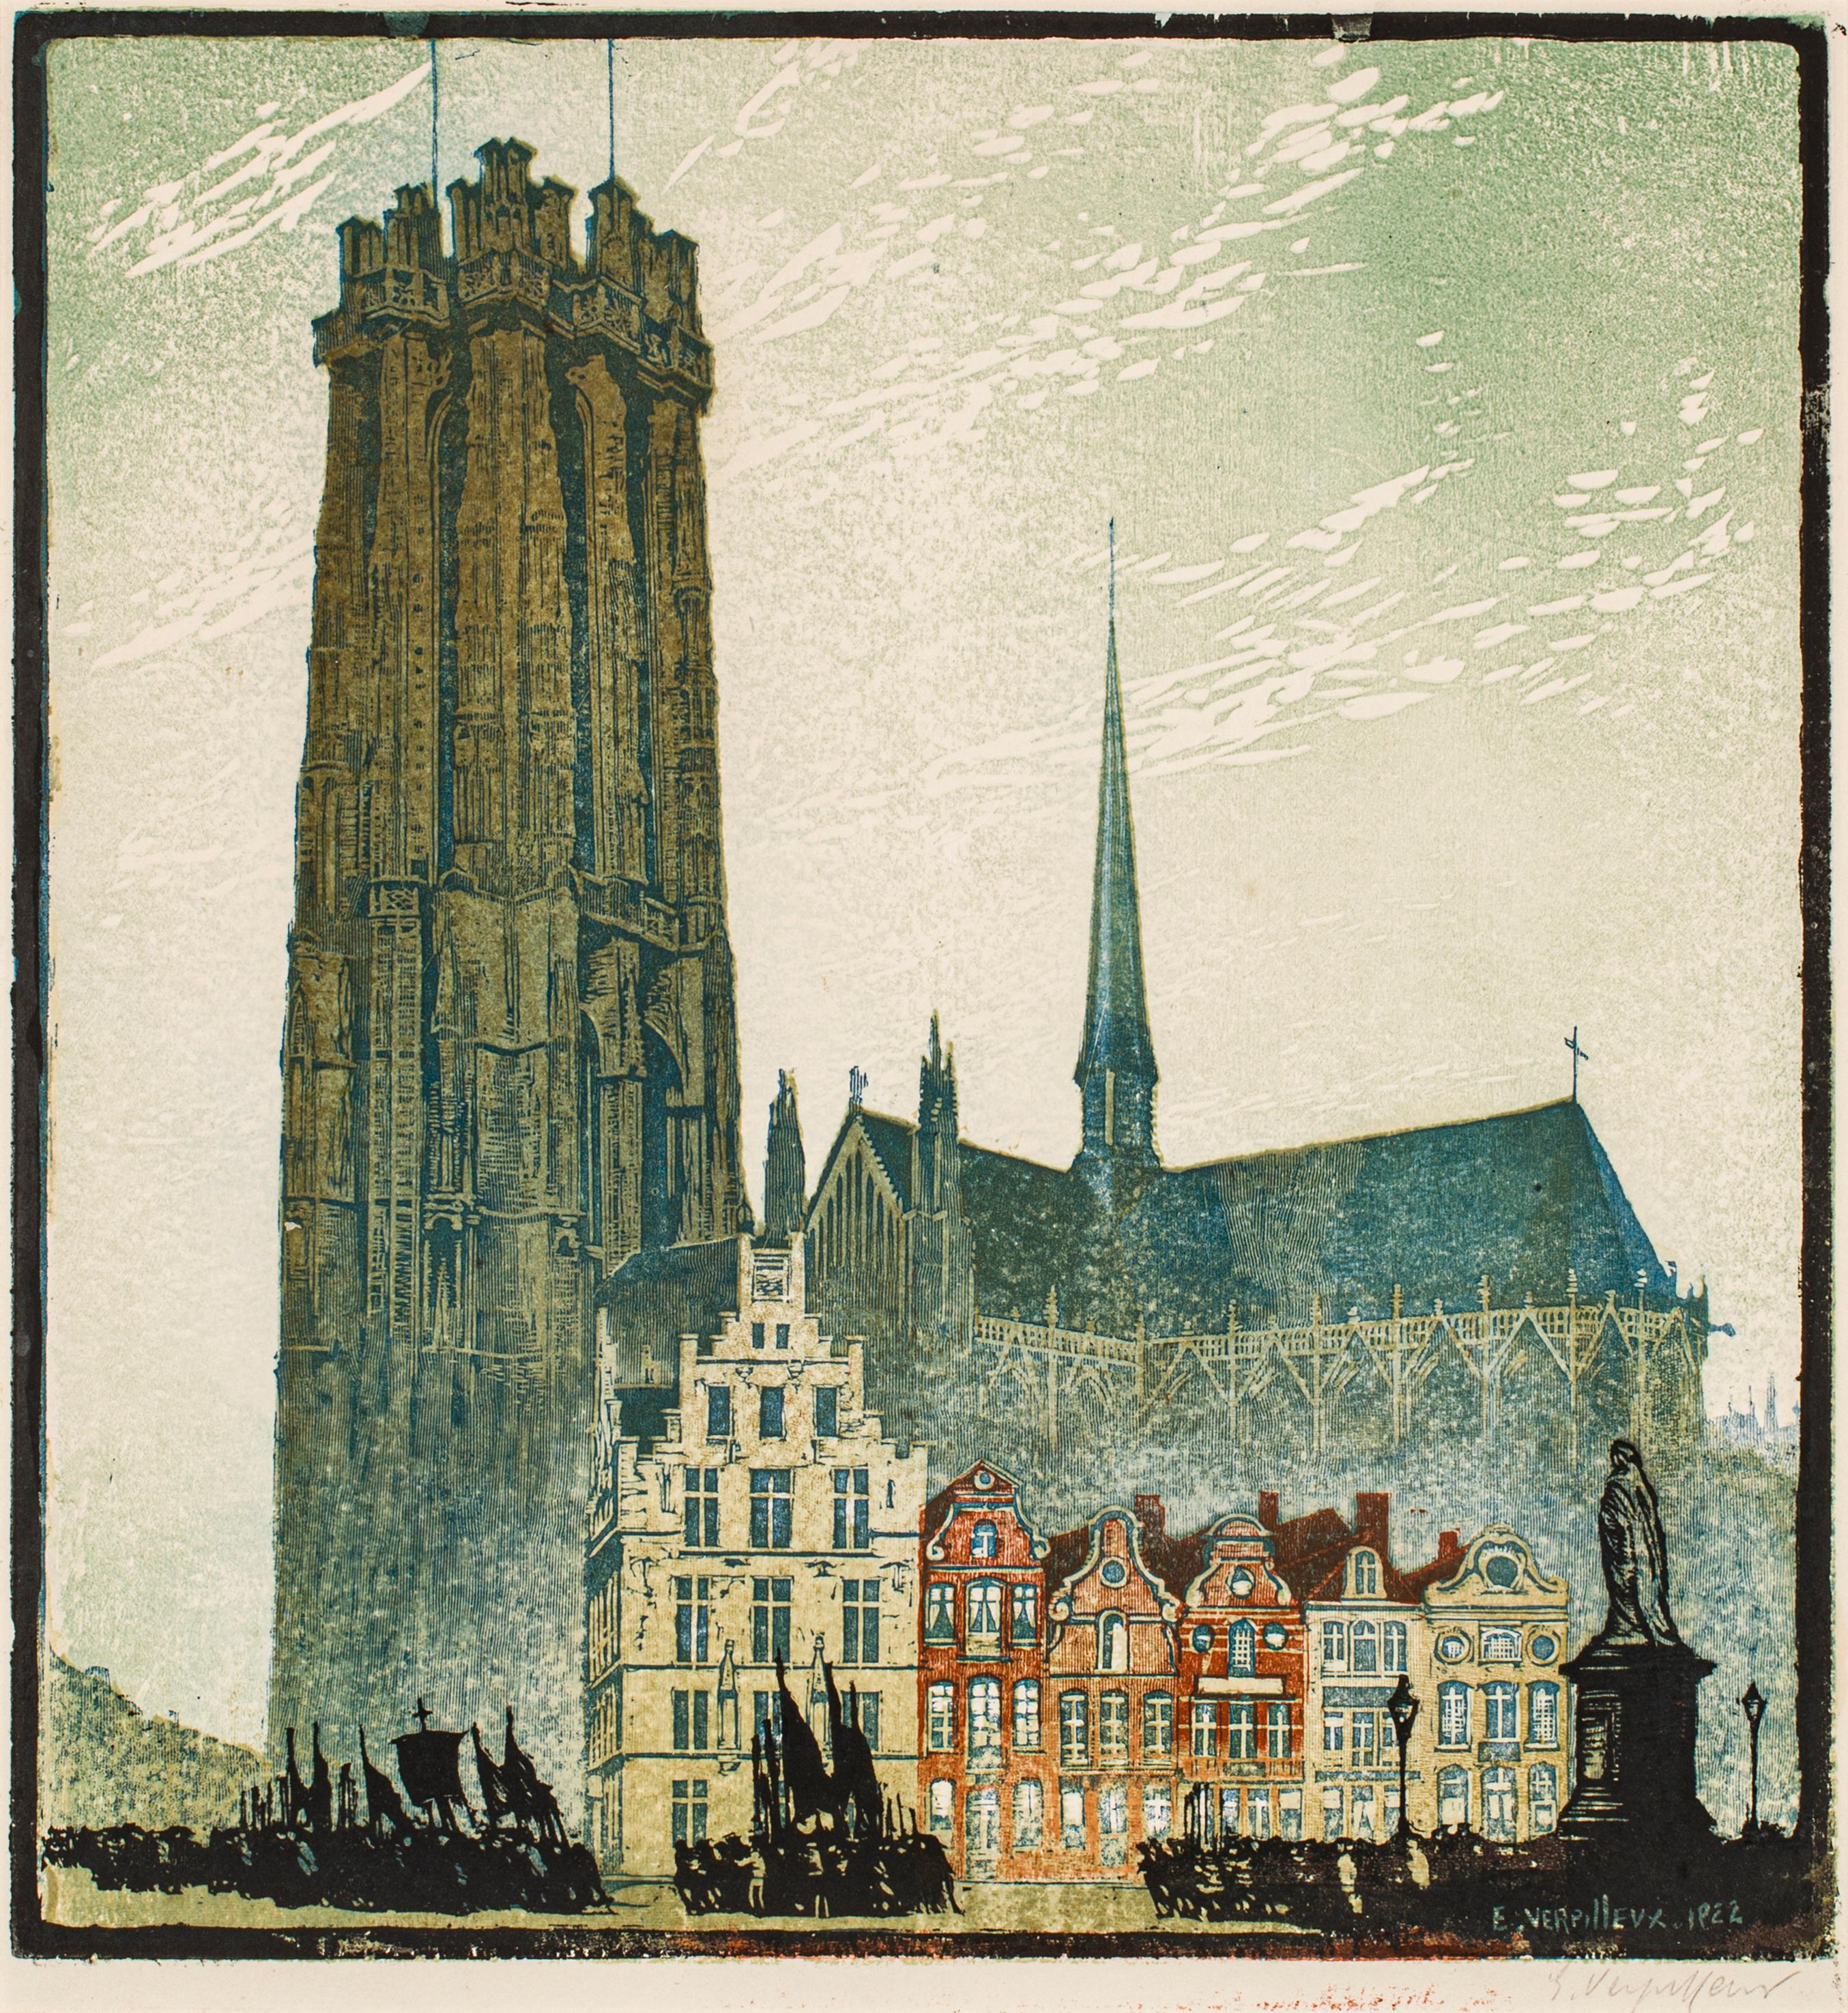 Emile Antoine Verpilleux, 1888-1964
Malines, 1922
Original-Holzschnitt, in Farben gedruckt
14 x 15 Zoll
Mit Bleistift signiert